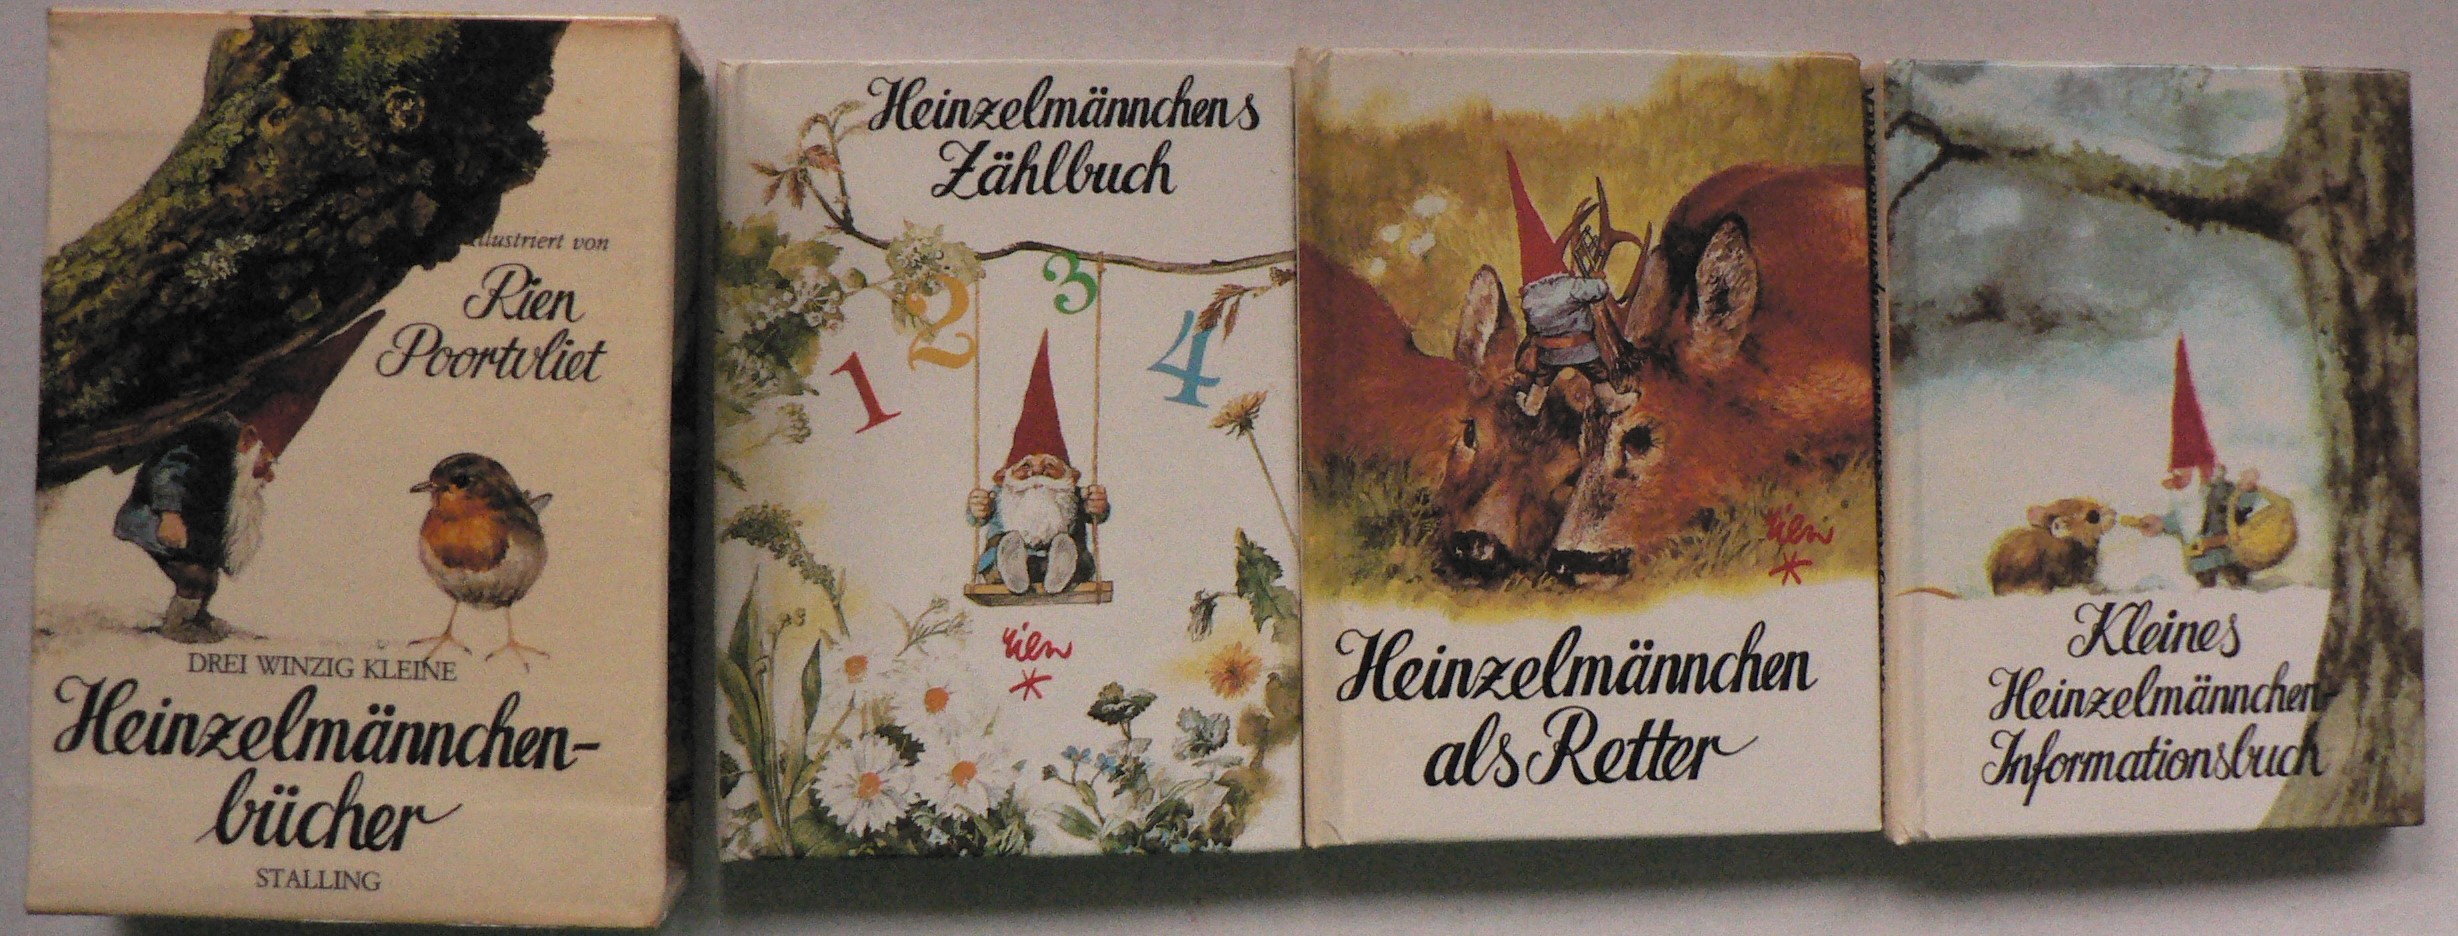 Rien Poortvliet (Illustr.)/Wil Huygen (Text)/Christa L. Cordes (bersetz.)  Drei winzig kleine Heinzelmnnchenbcher 